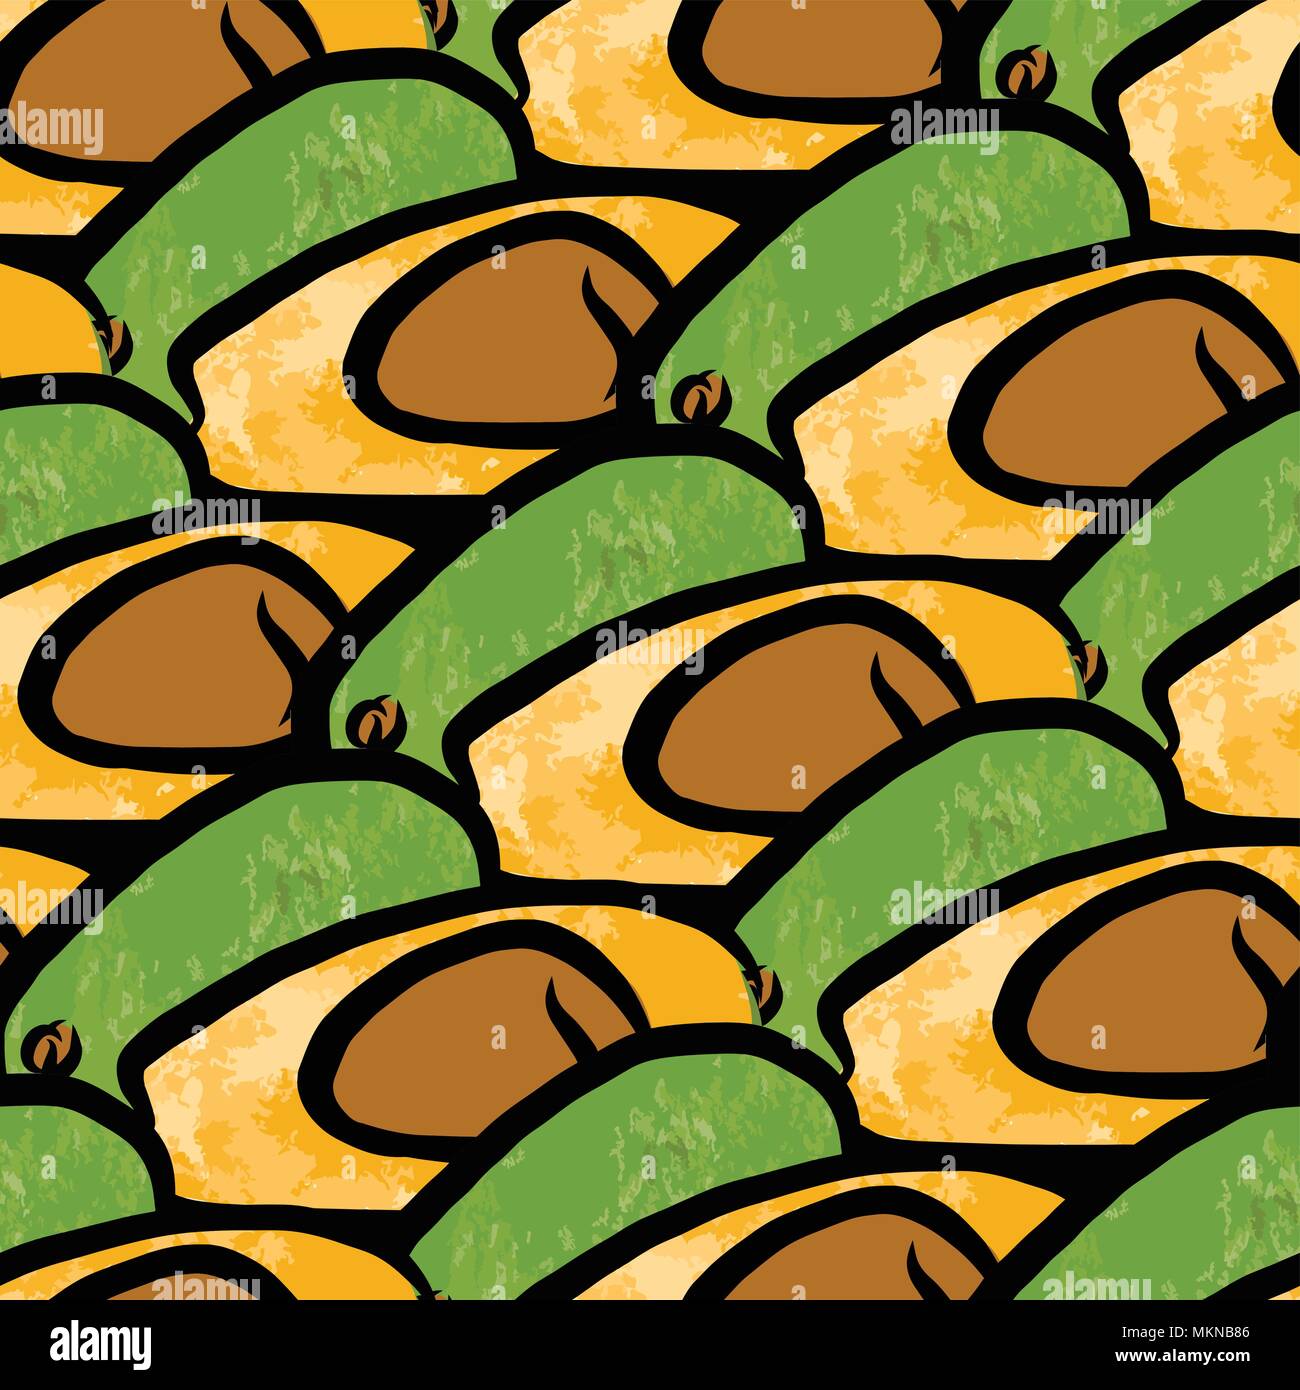 Vektor nahtlose Muster von avocados. Von Hand gezeichnet und farbige Abbildung Stock Vektor